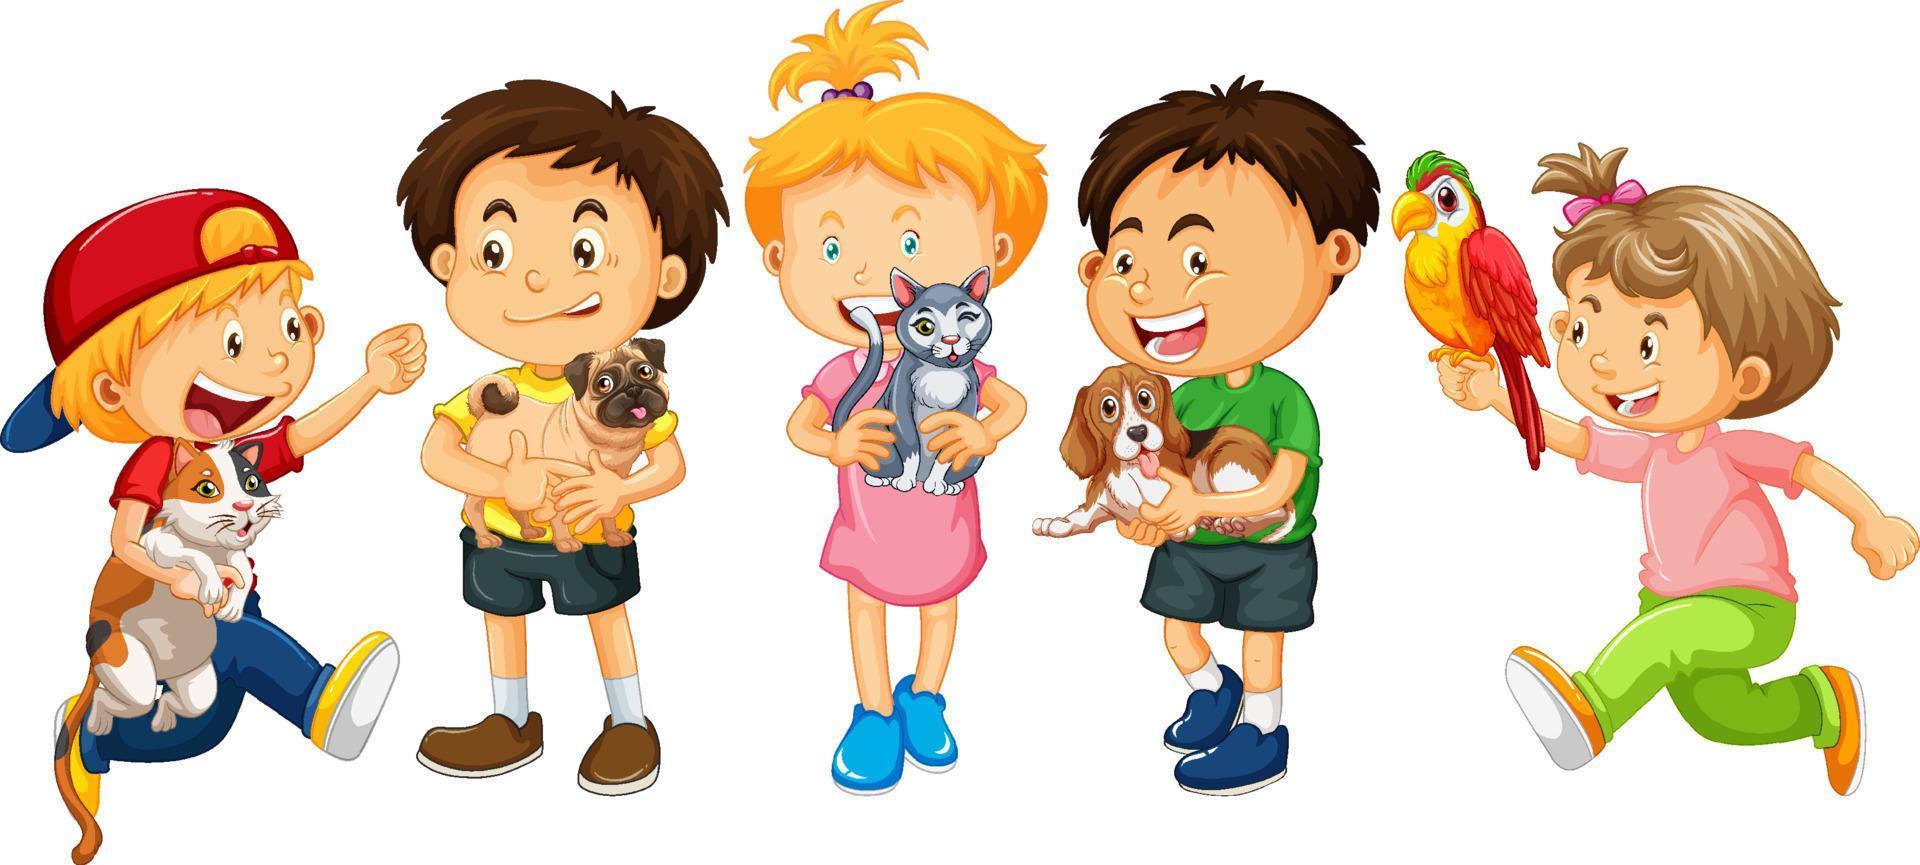 gruppo di bambini personaggio dei cartoni animati vettore